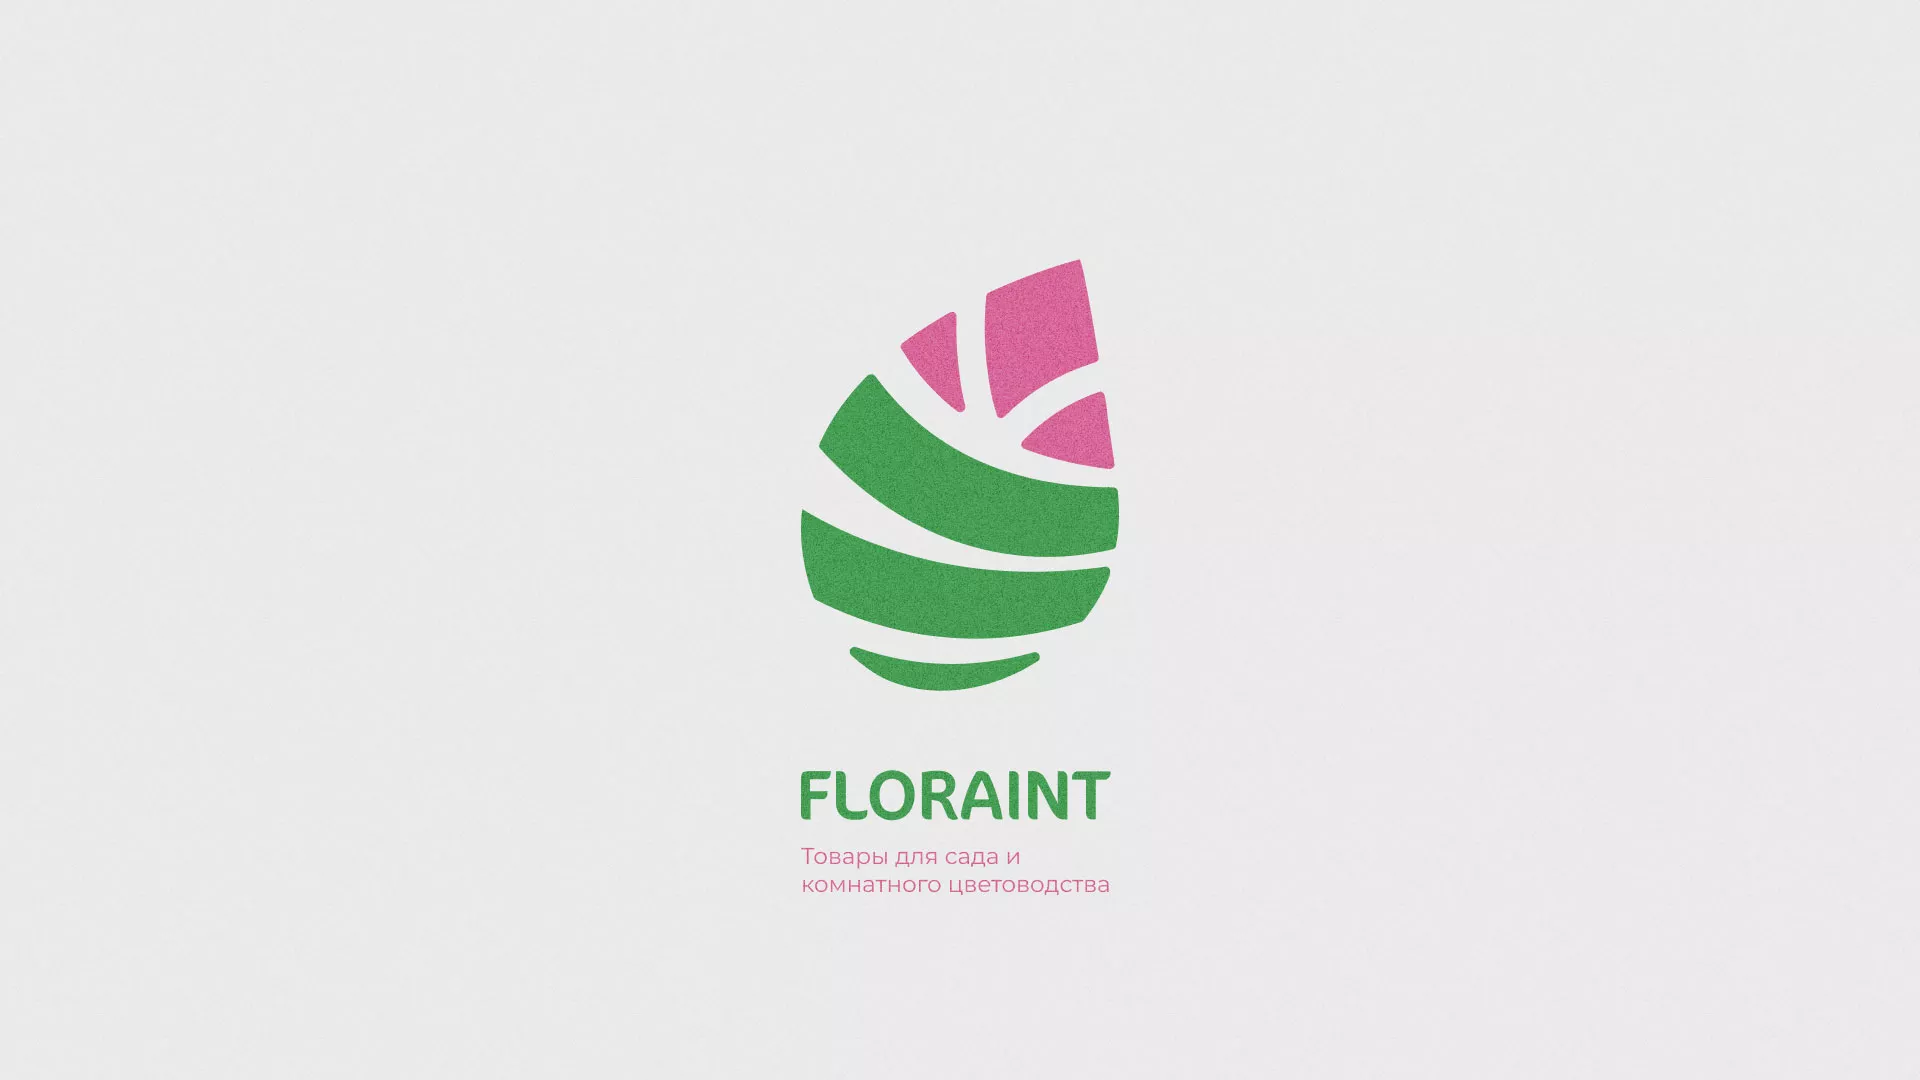 Разработка оформления профиля Instagram для магазина «Floraint» в Николаевске-на-Амуре